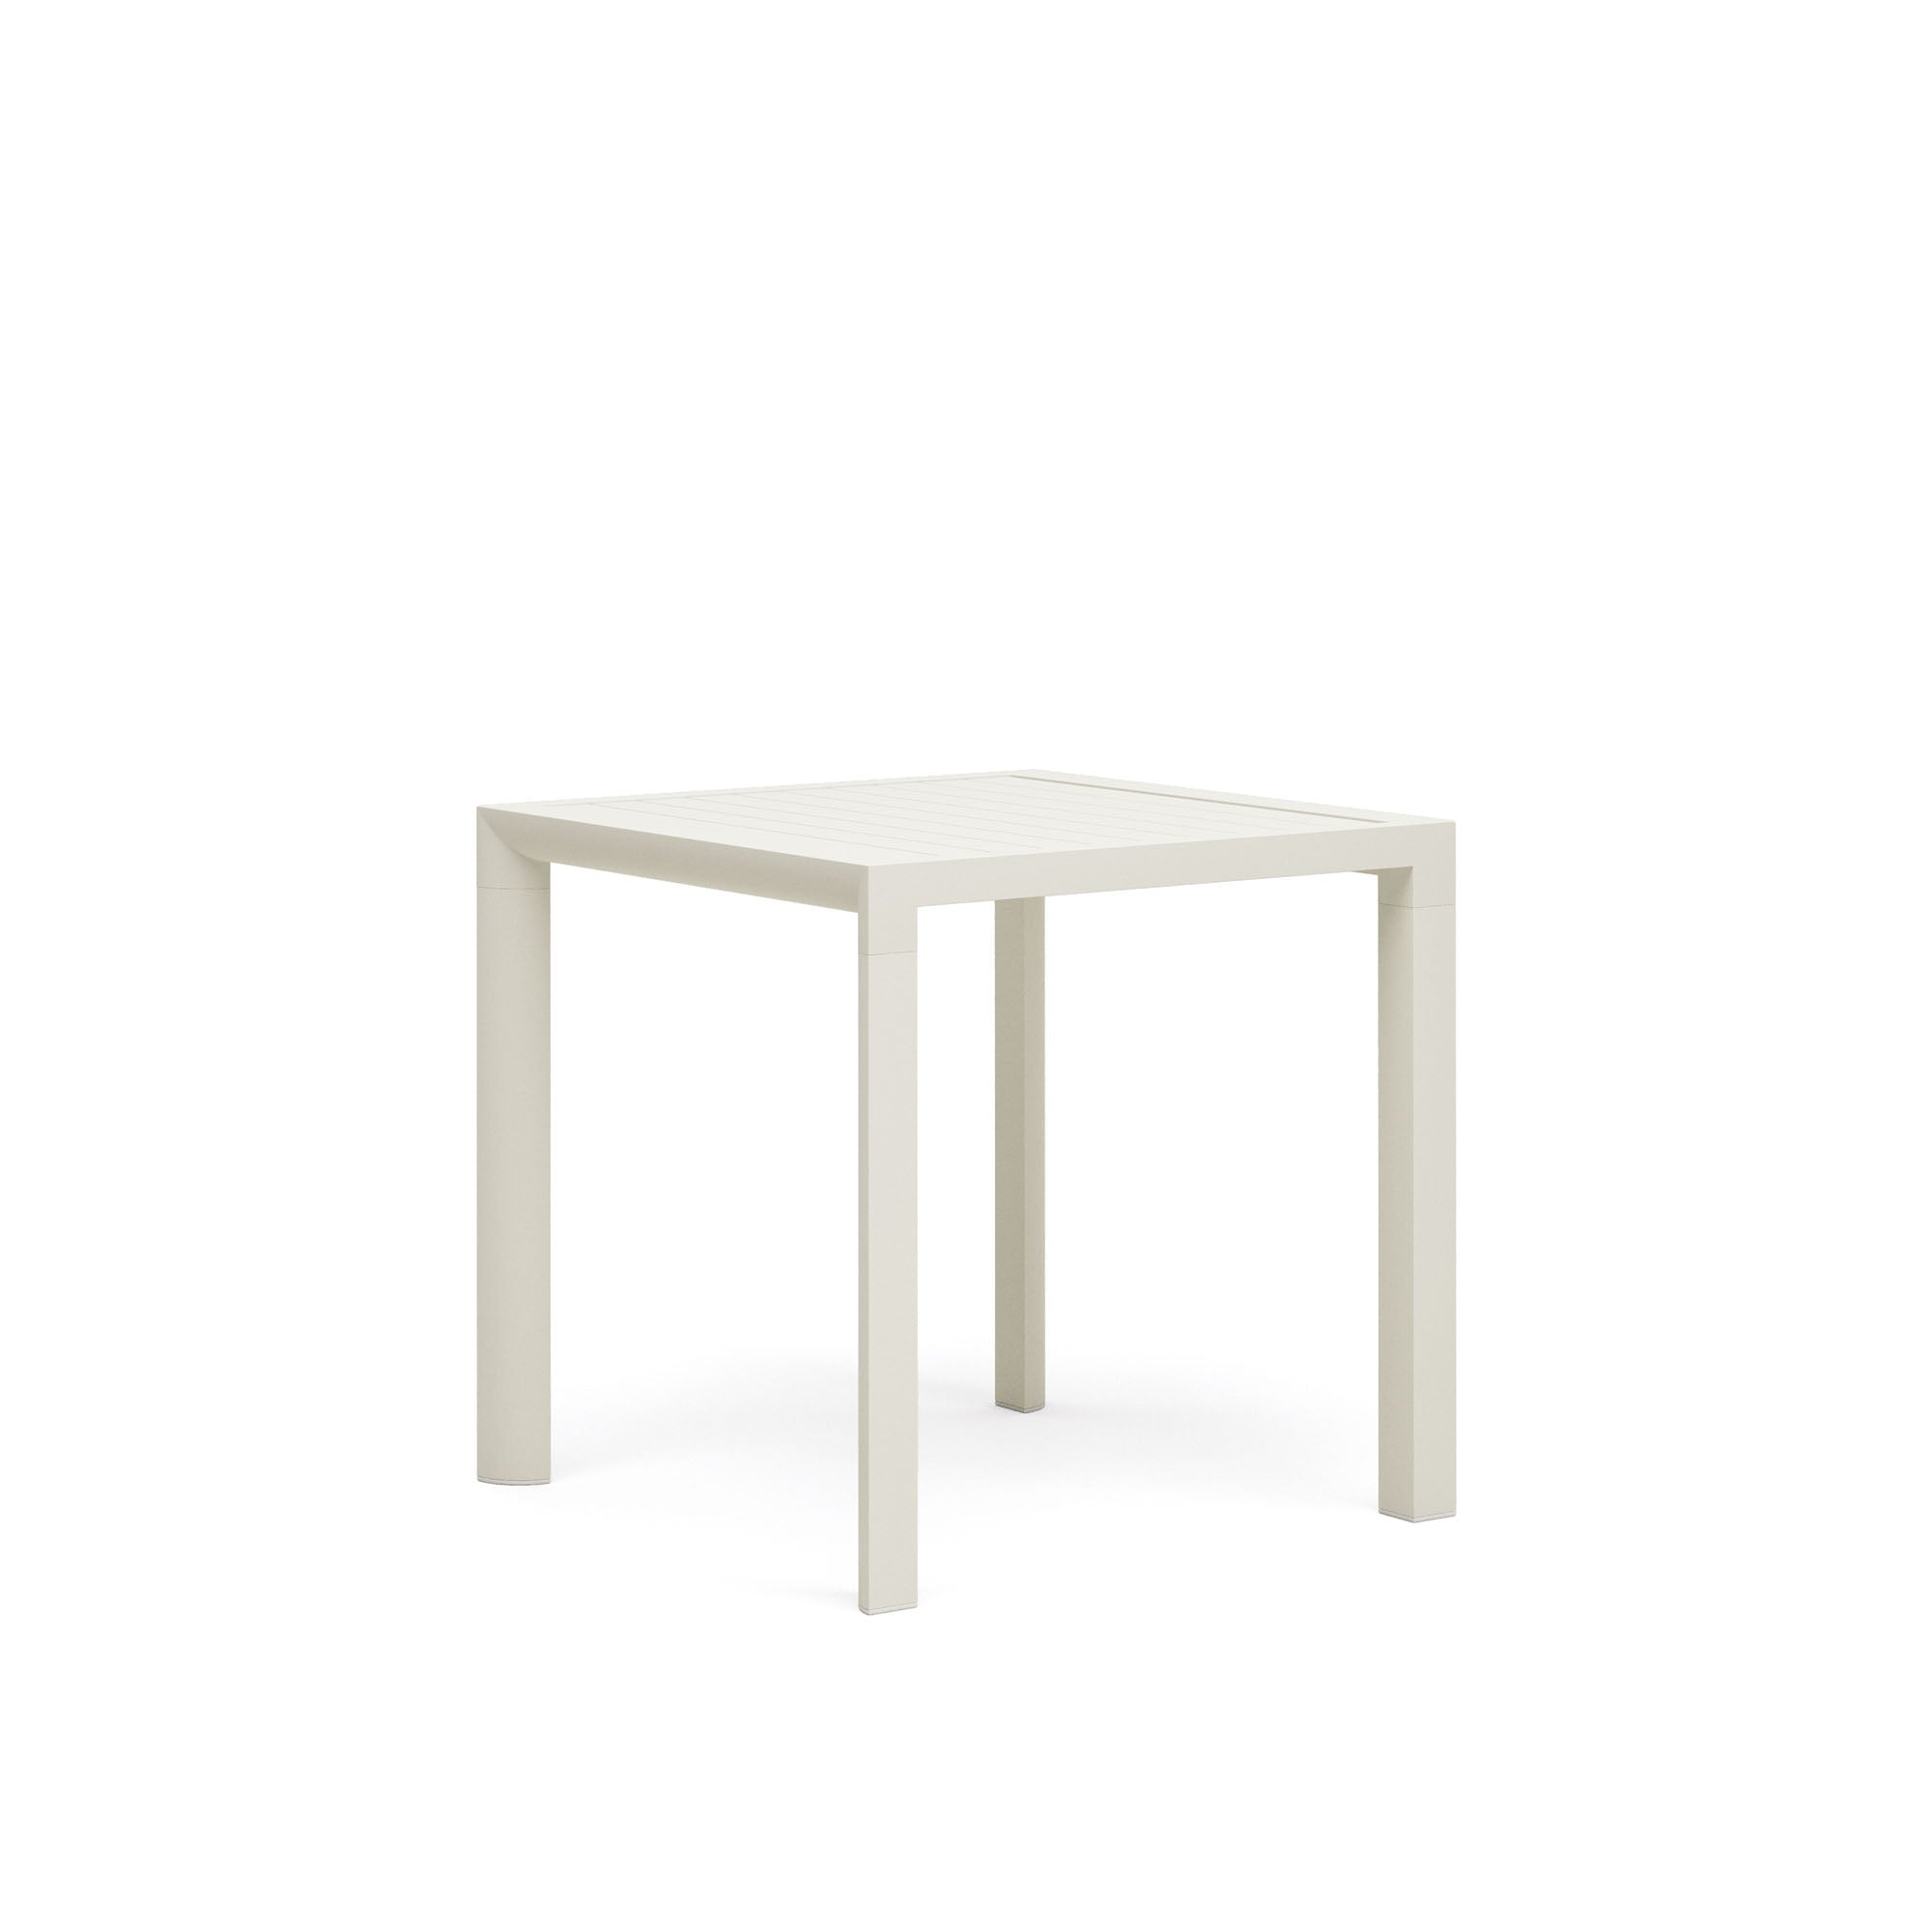 Culip alumínium kültéri asztal, porszórt fehér kivitelben, 77 x 77 cm